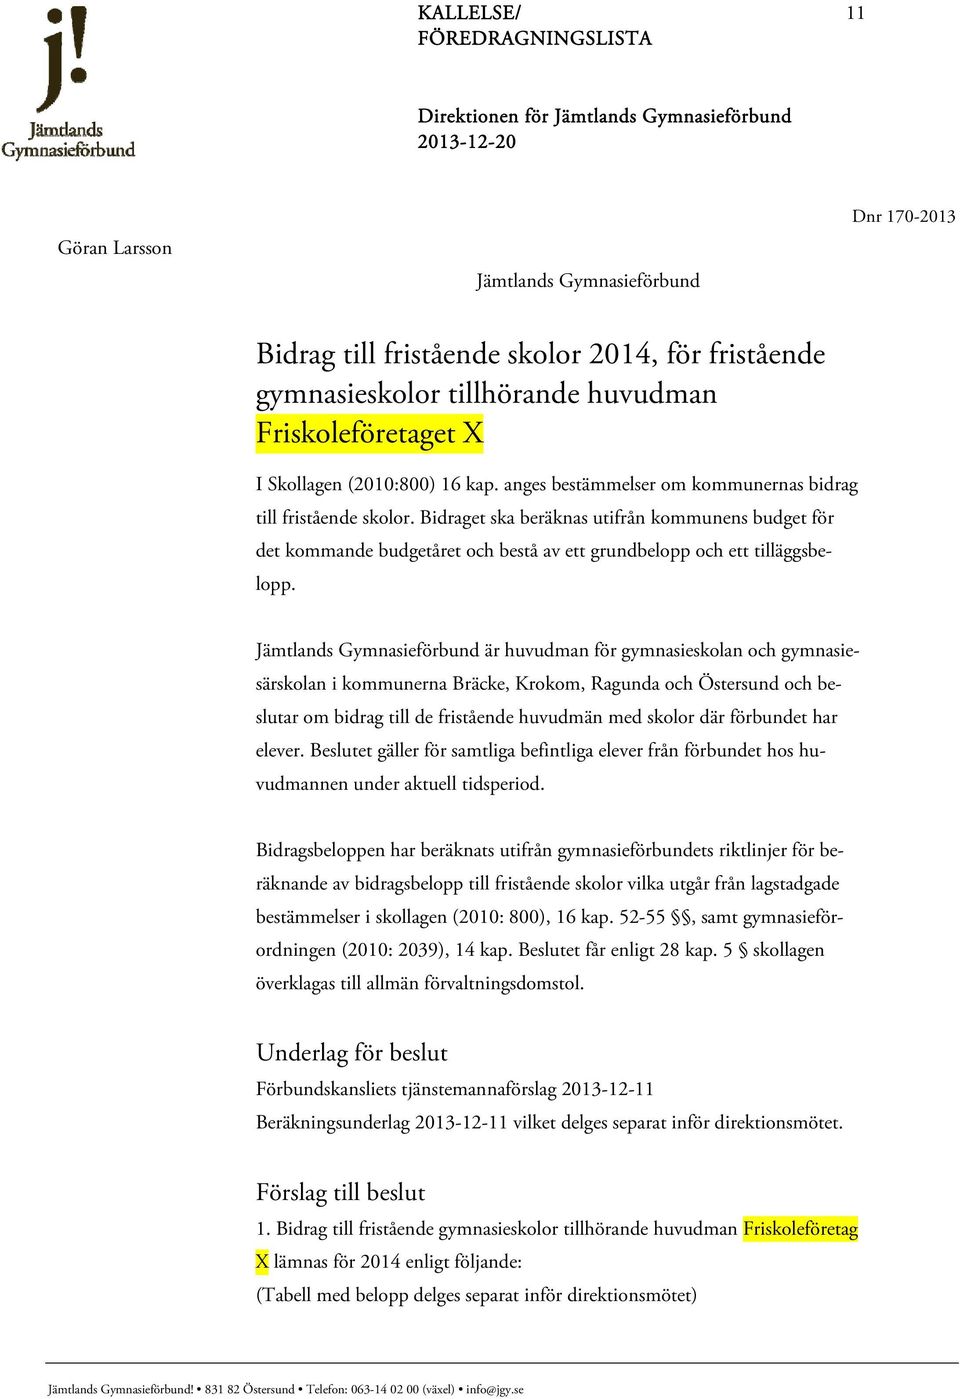 Jämtlands Gymnasieförbund är huvudman för gymnasieskolan och gymnasiesärskolan i kommunerna Bräcke, Krokom, Ragunda och Östersund och beslutar om bidrag till de fristående huvudmän med skolor där